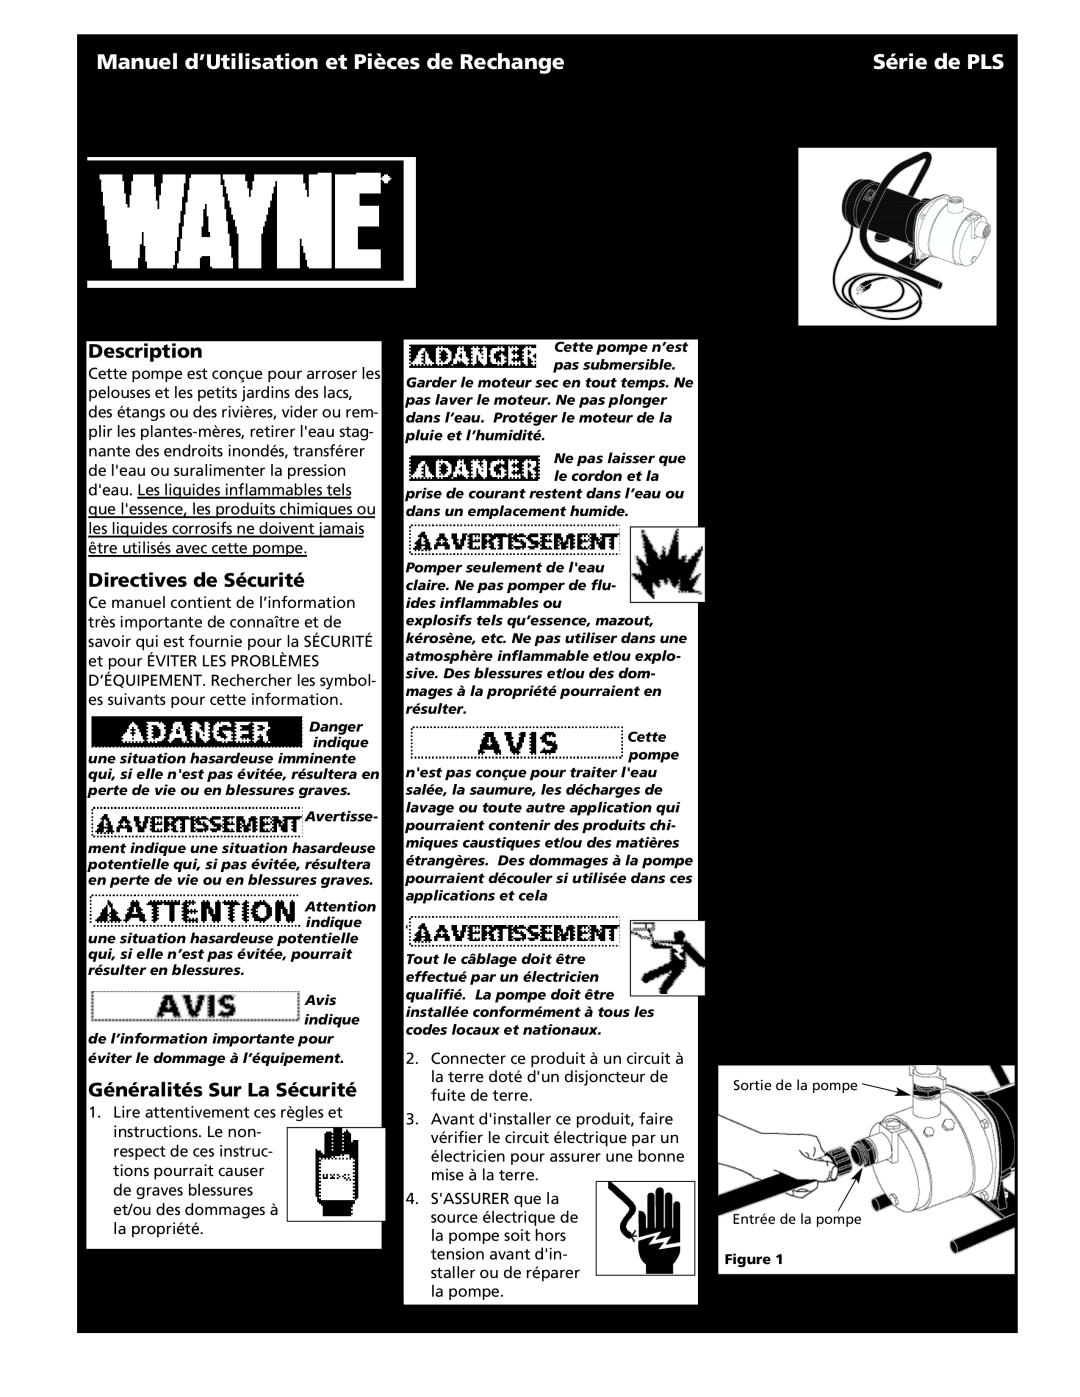 Wayne 321602-001, PLS Series Manuel d’Utilisation et Pièces de Rechange, Série de PLS, Directives de Sécurité, Description 